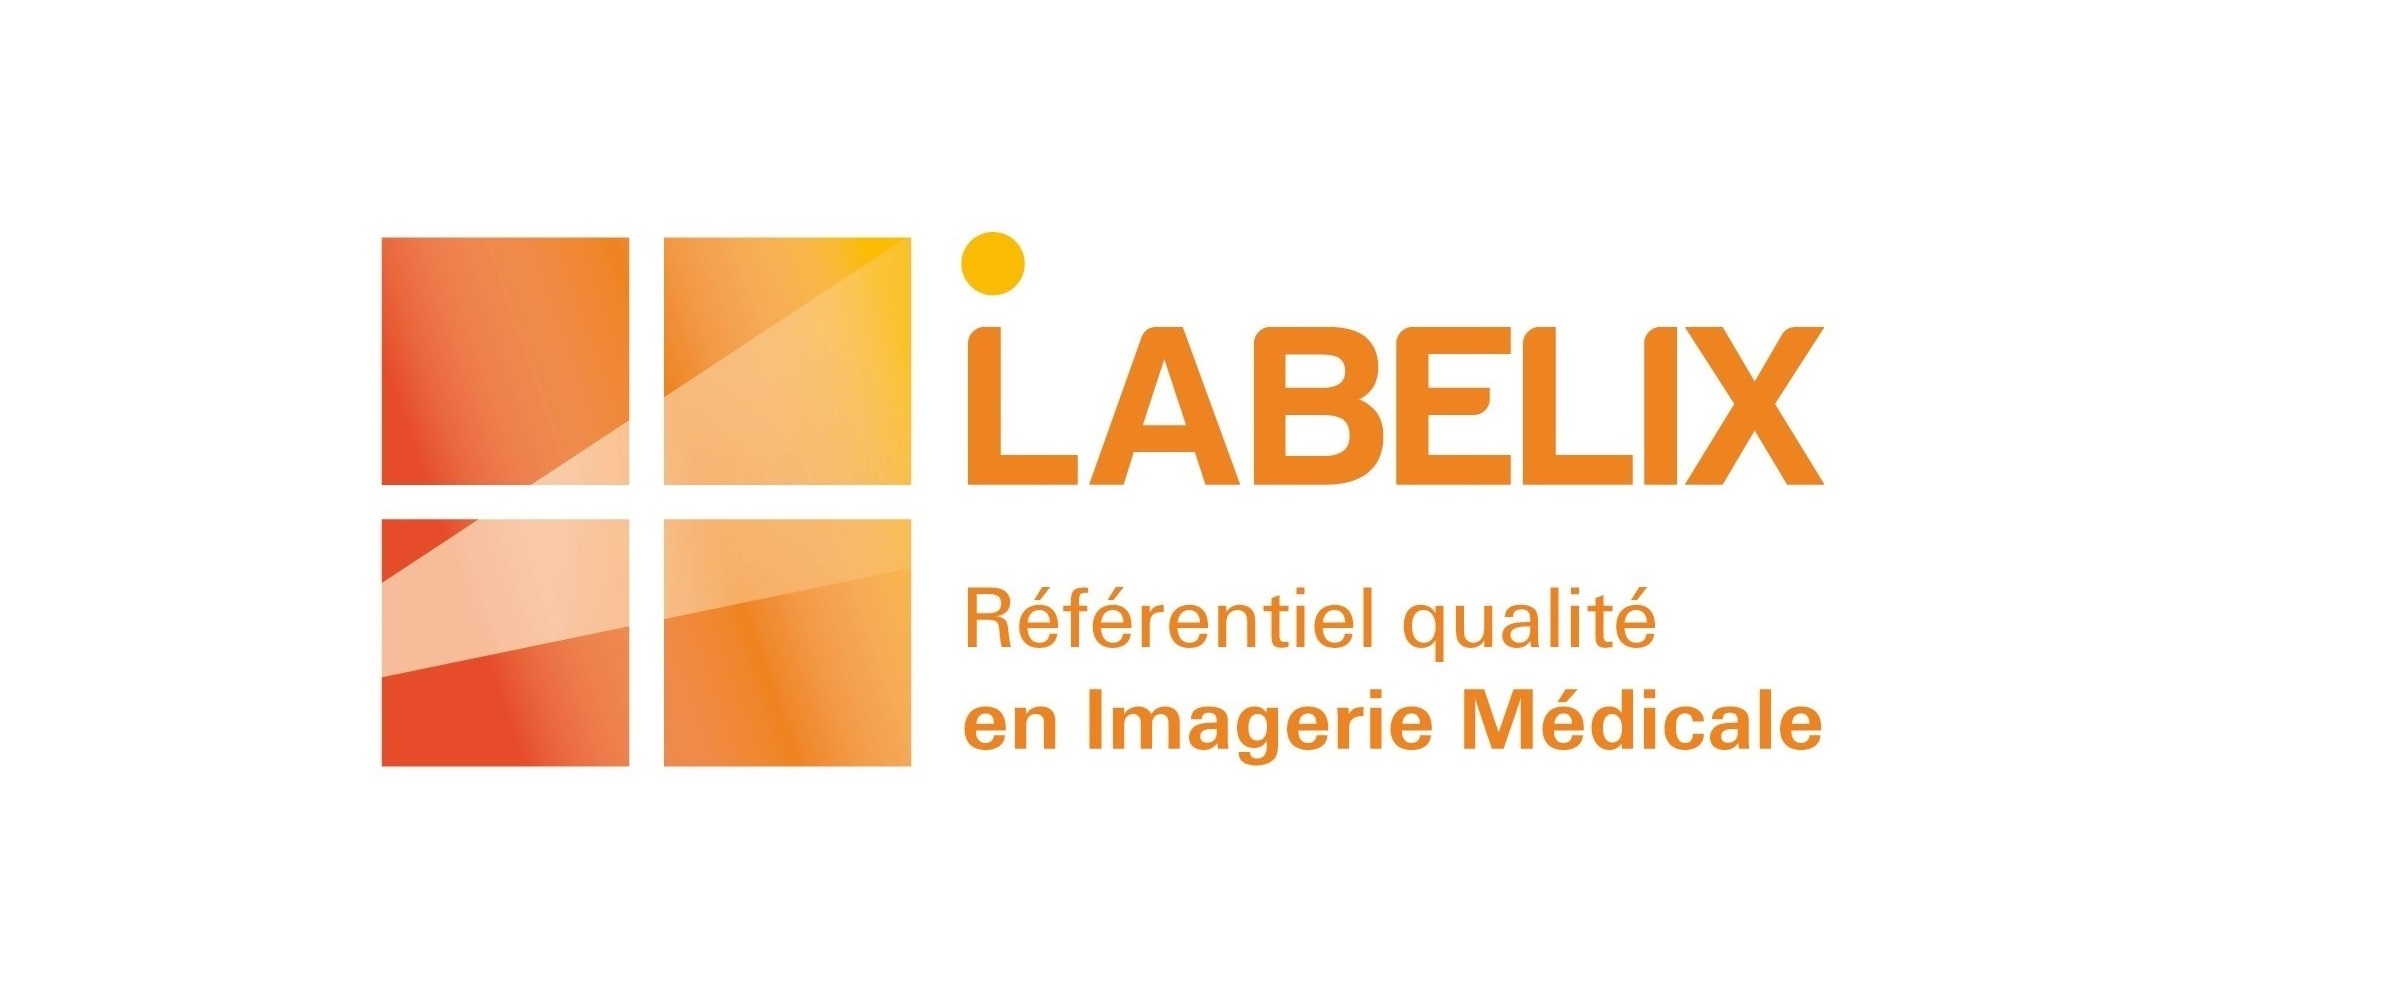 LABELIX : le référentiel qualité en imagerie médicale